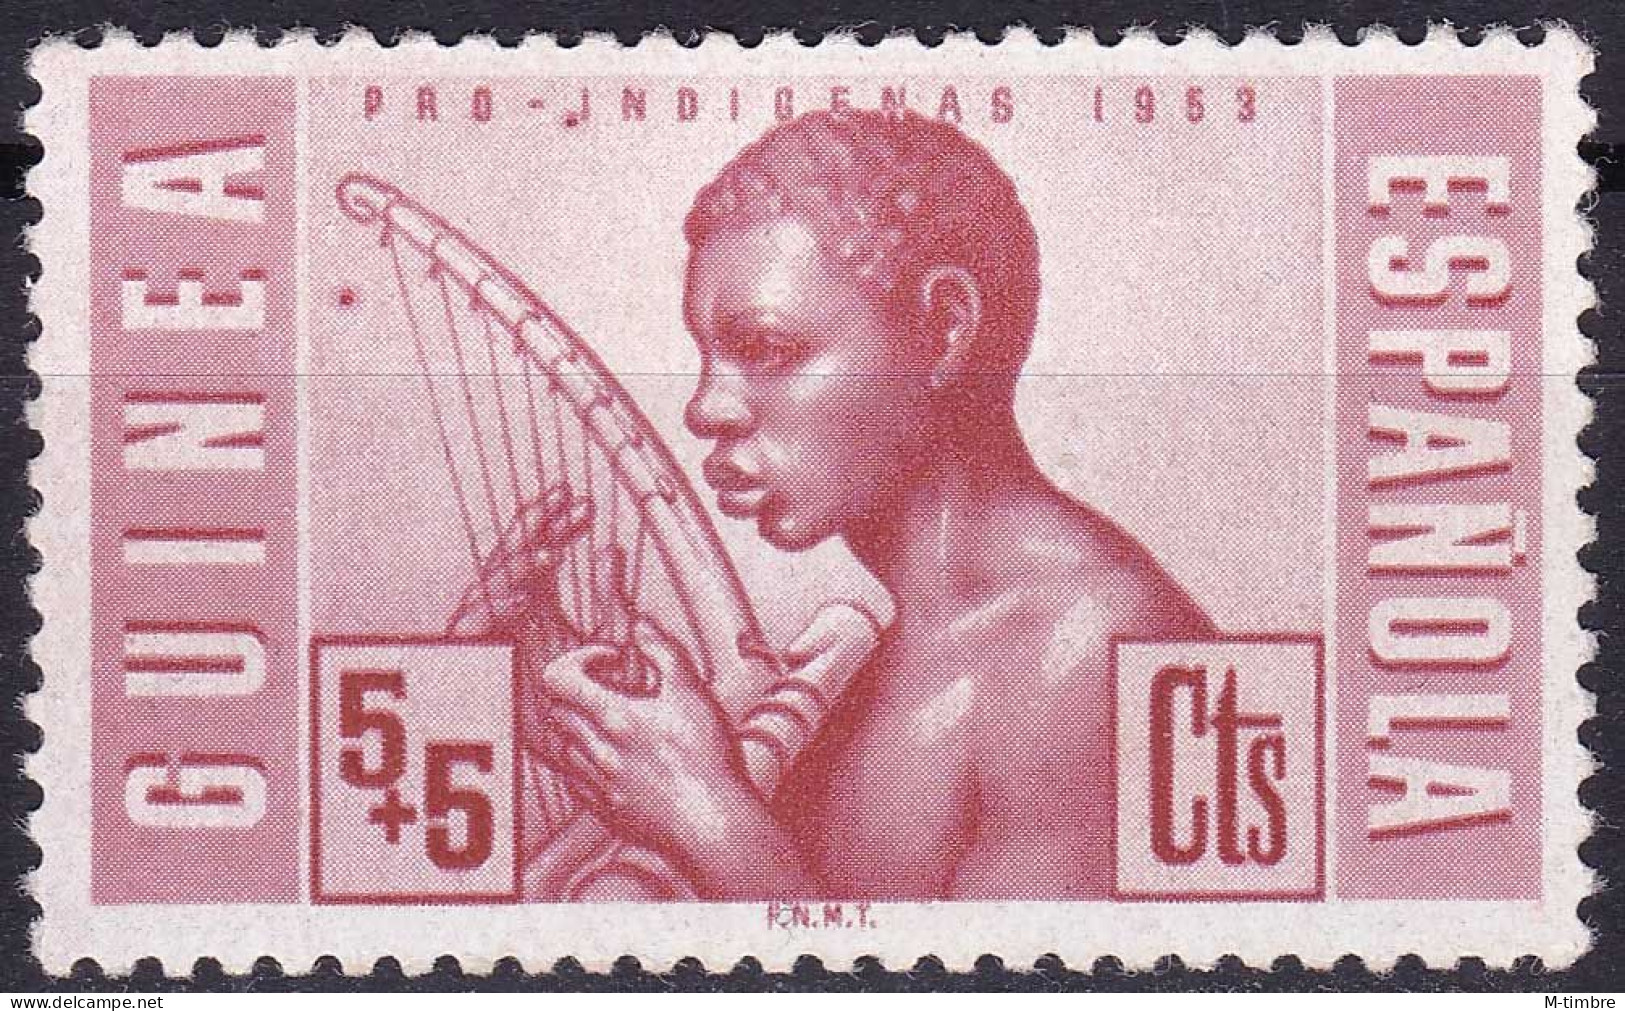 Guinée Espagnole YT 342 Mi 286 Année 1953 (MNH **) Instrument De Musique - Musique - Guinea Española